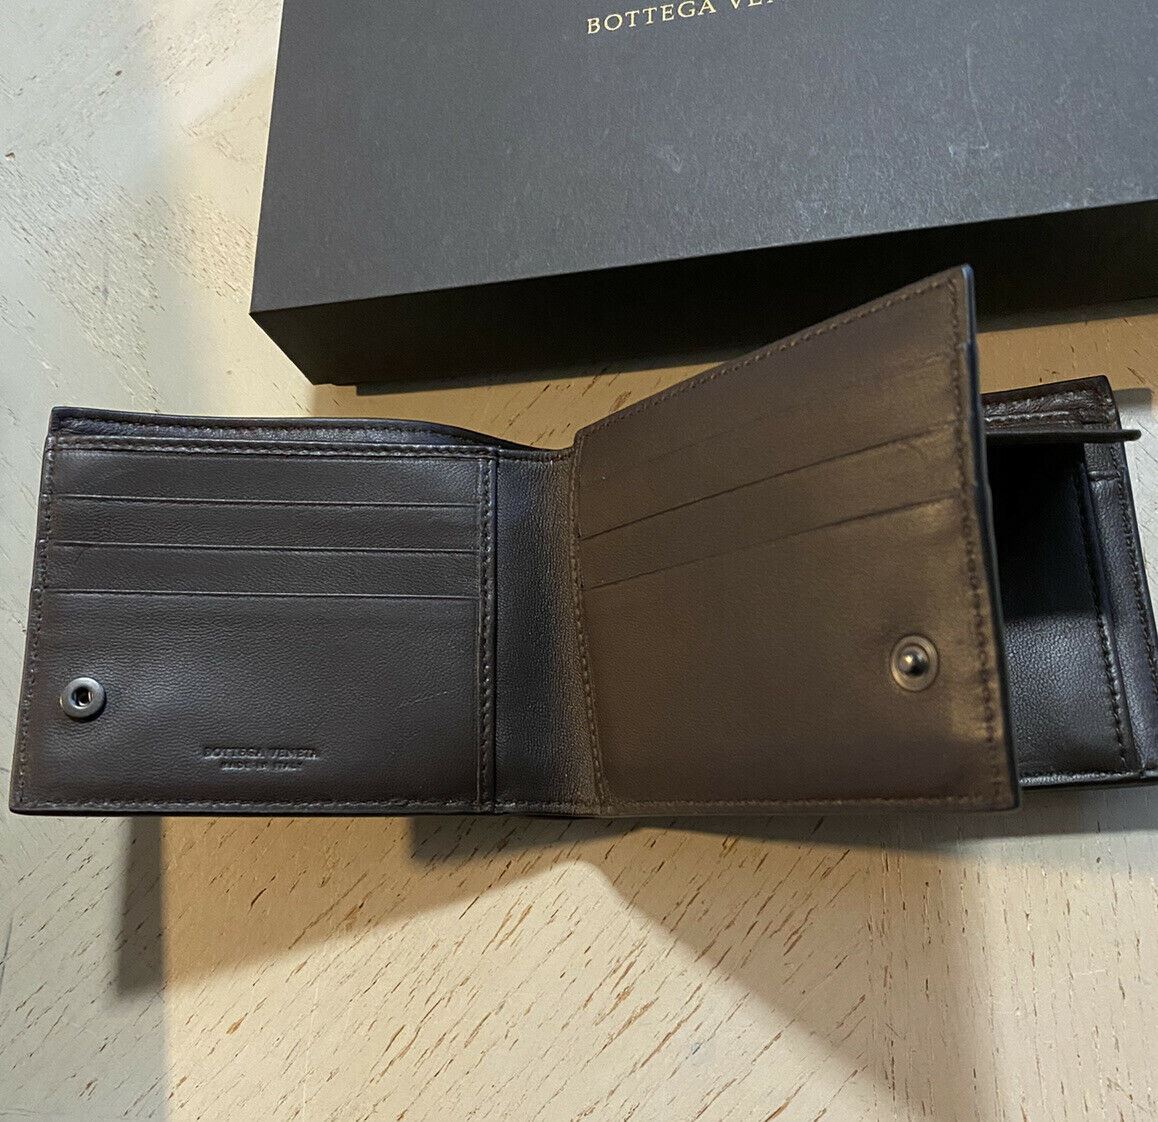 Новый мужской кошелек Bottega Veneta темно-коричневого цвета за 825 долларов 522272 V001N Италия